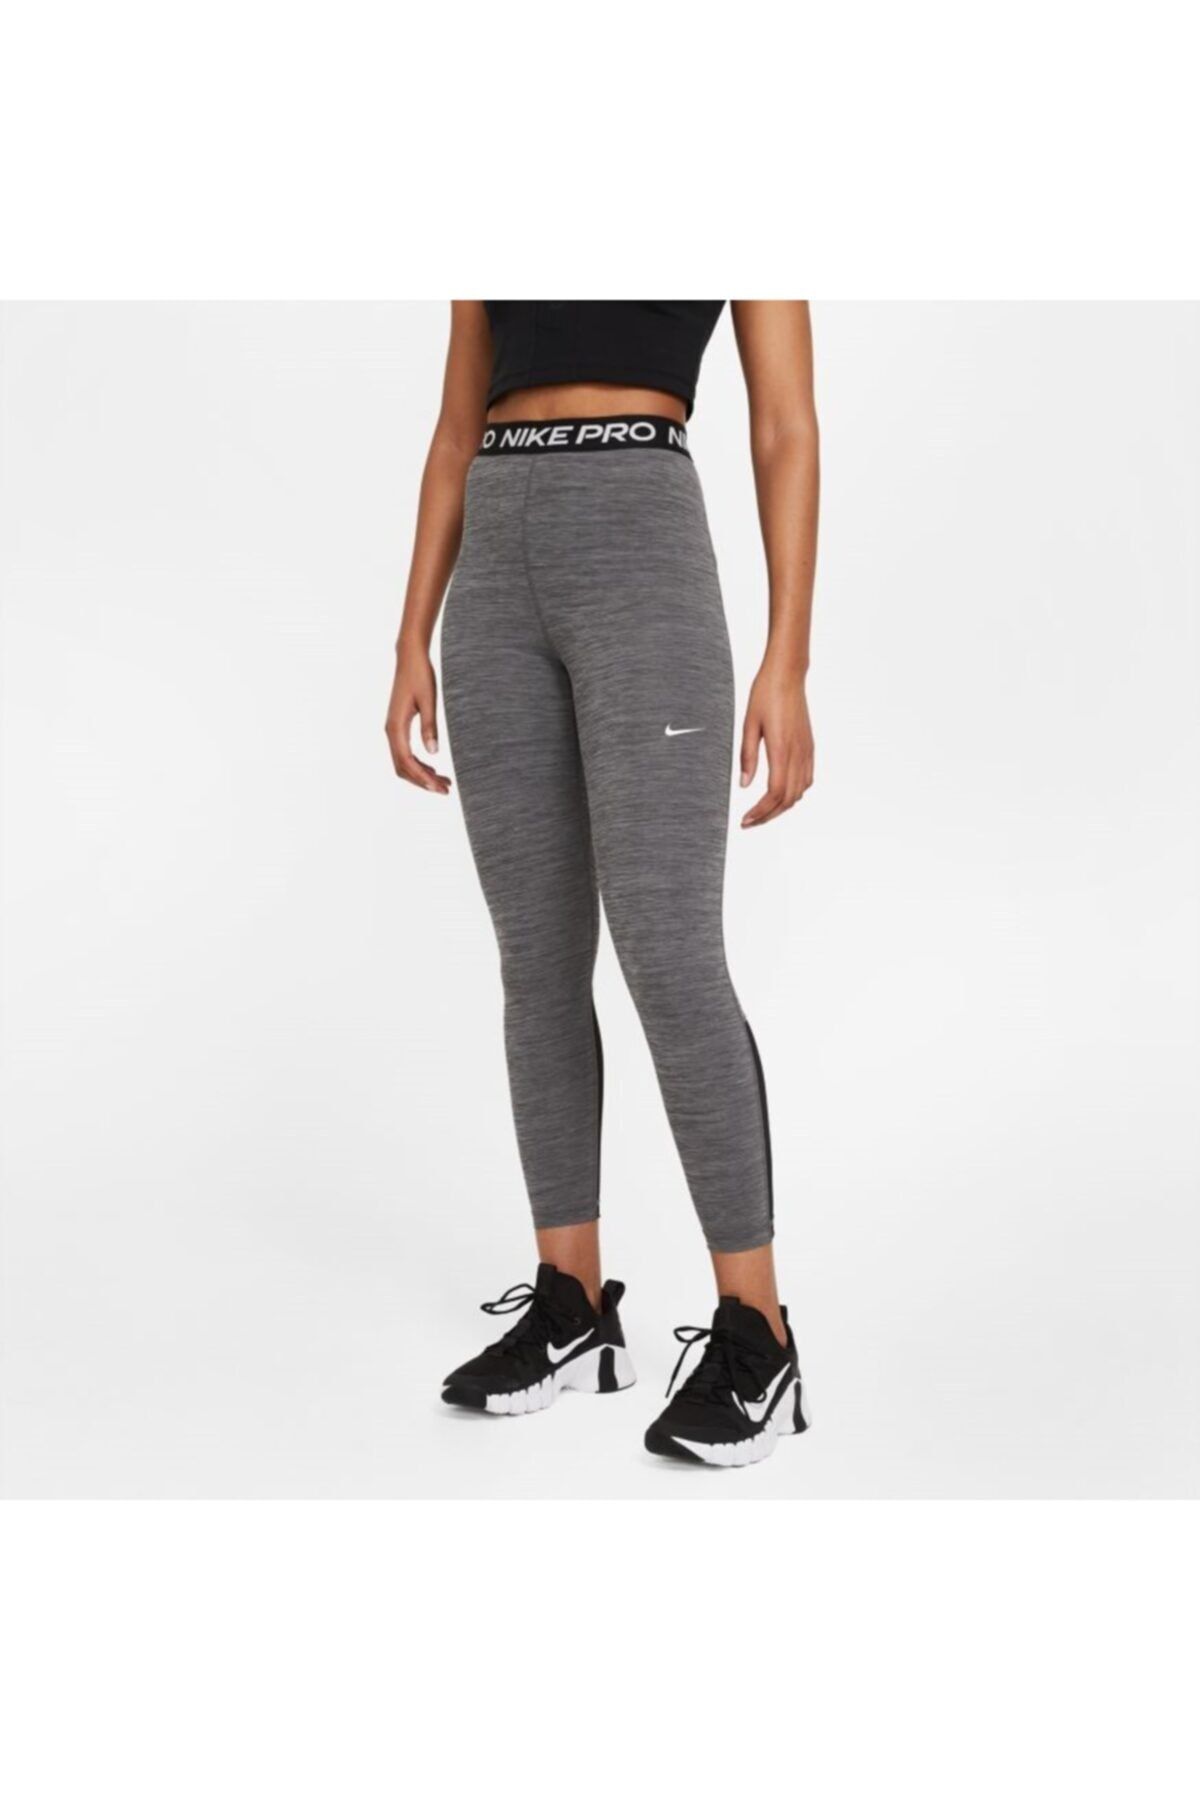 Nike Pro 365 Women's Tights - Trendyol